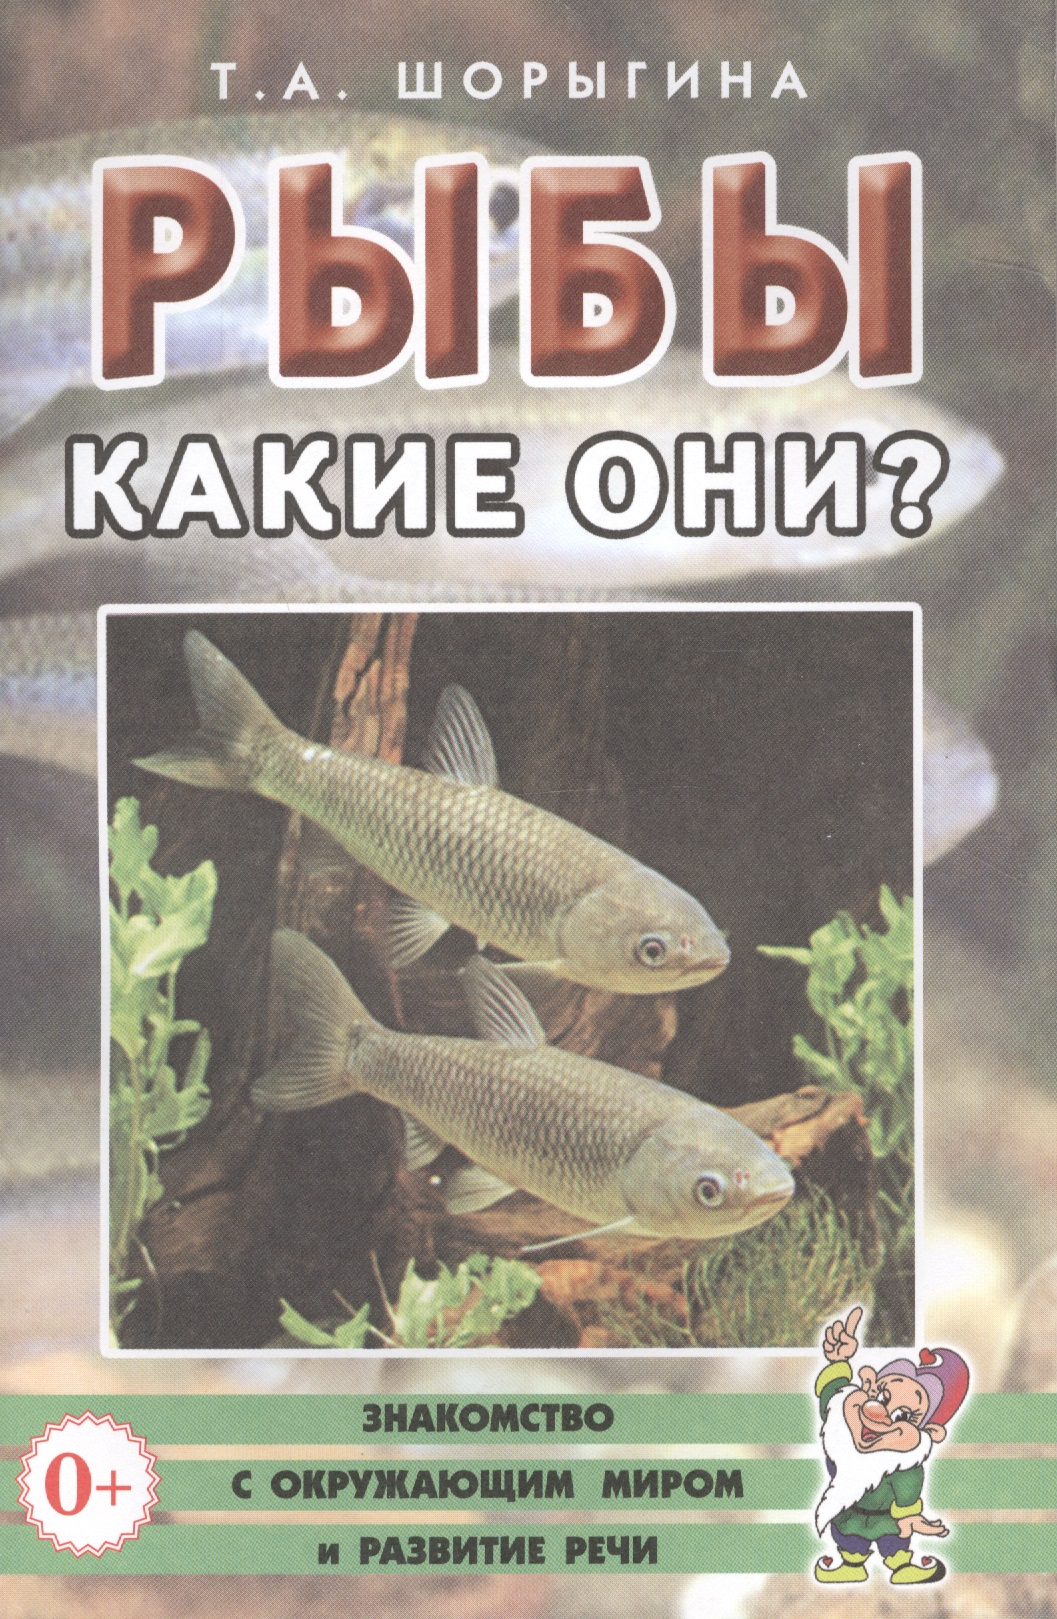 Книги про рыб. Энциклопедия про рыб для детей. Книги о рыбках для детей. Детская книга про рыб.